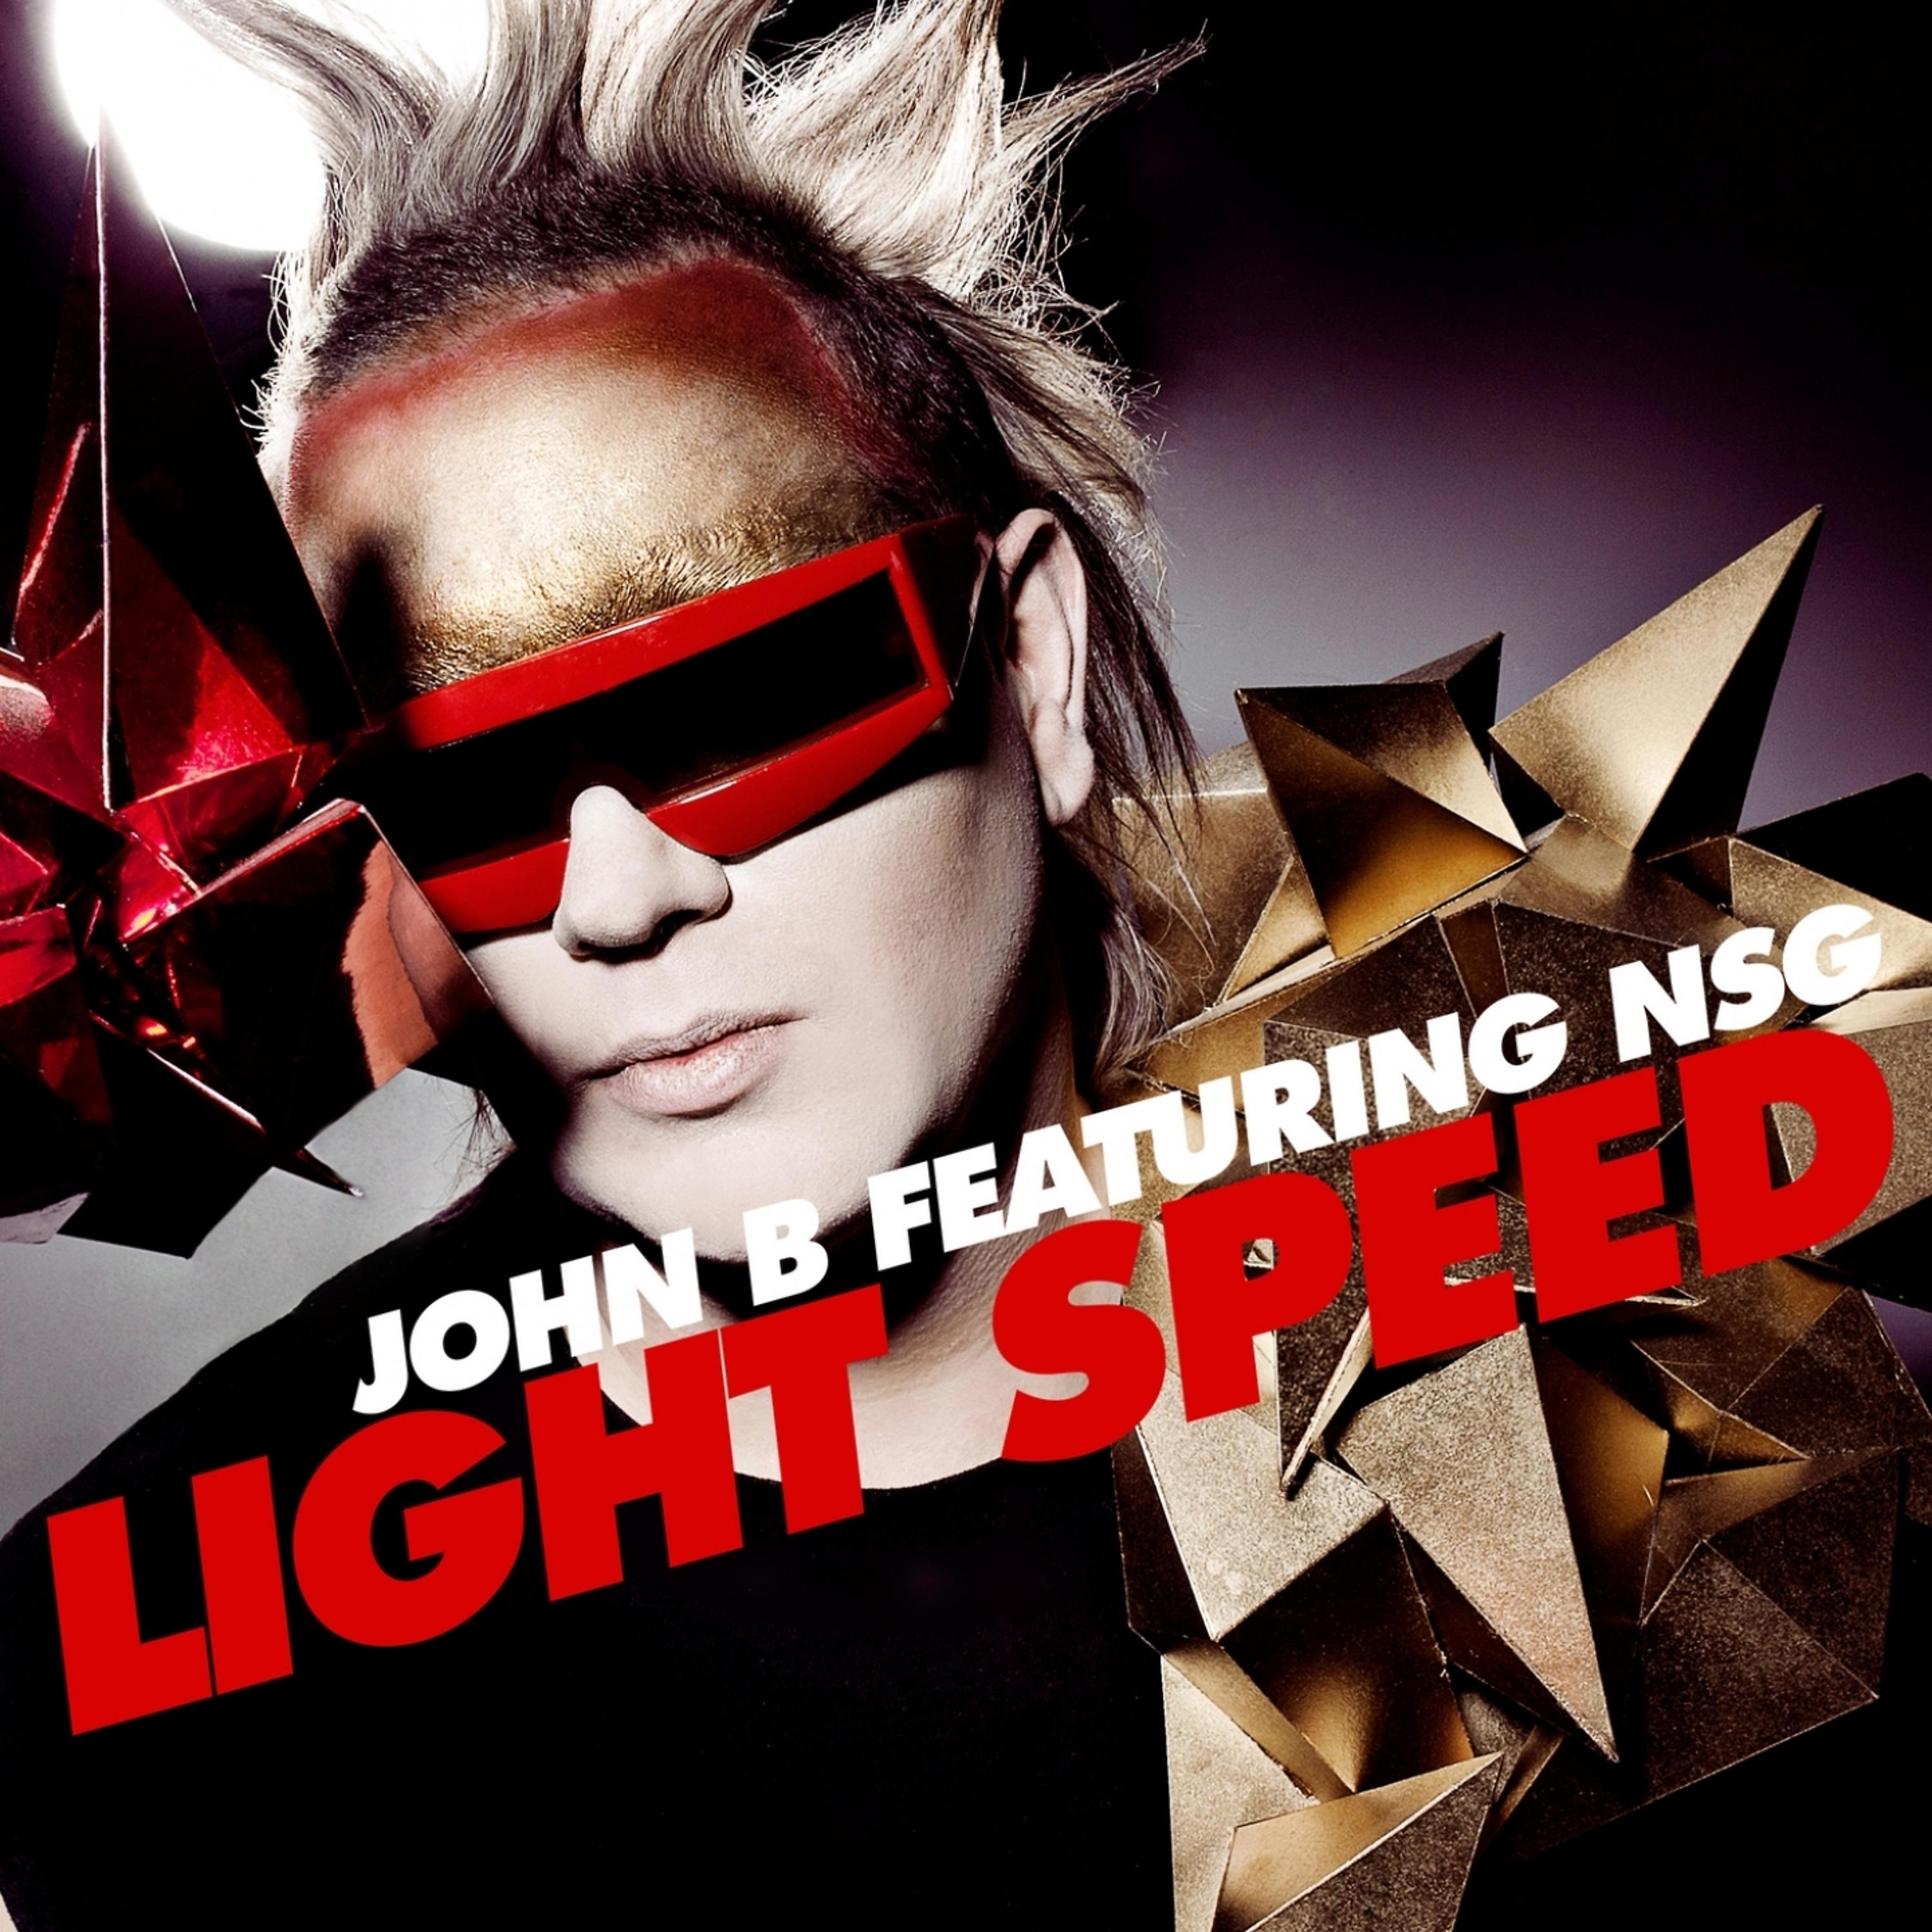 Постер альбома Light Speed